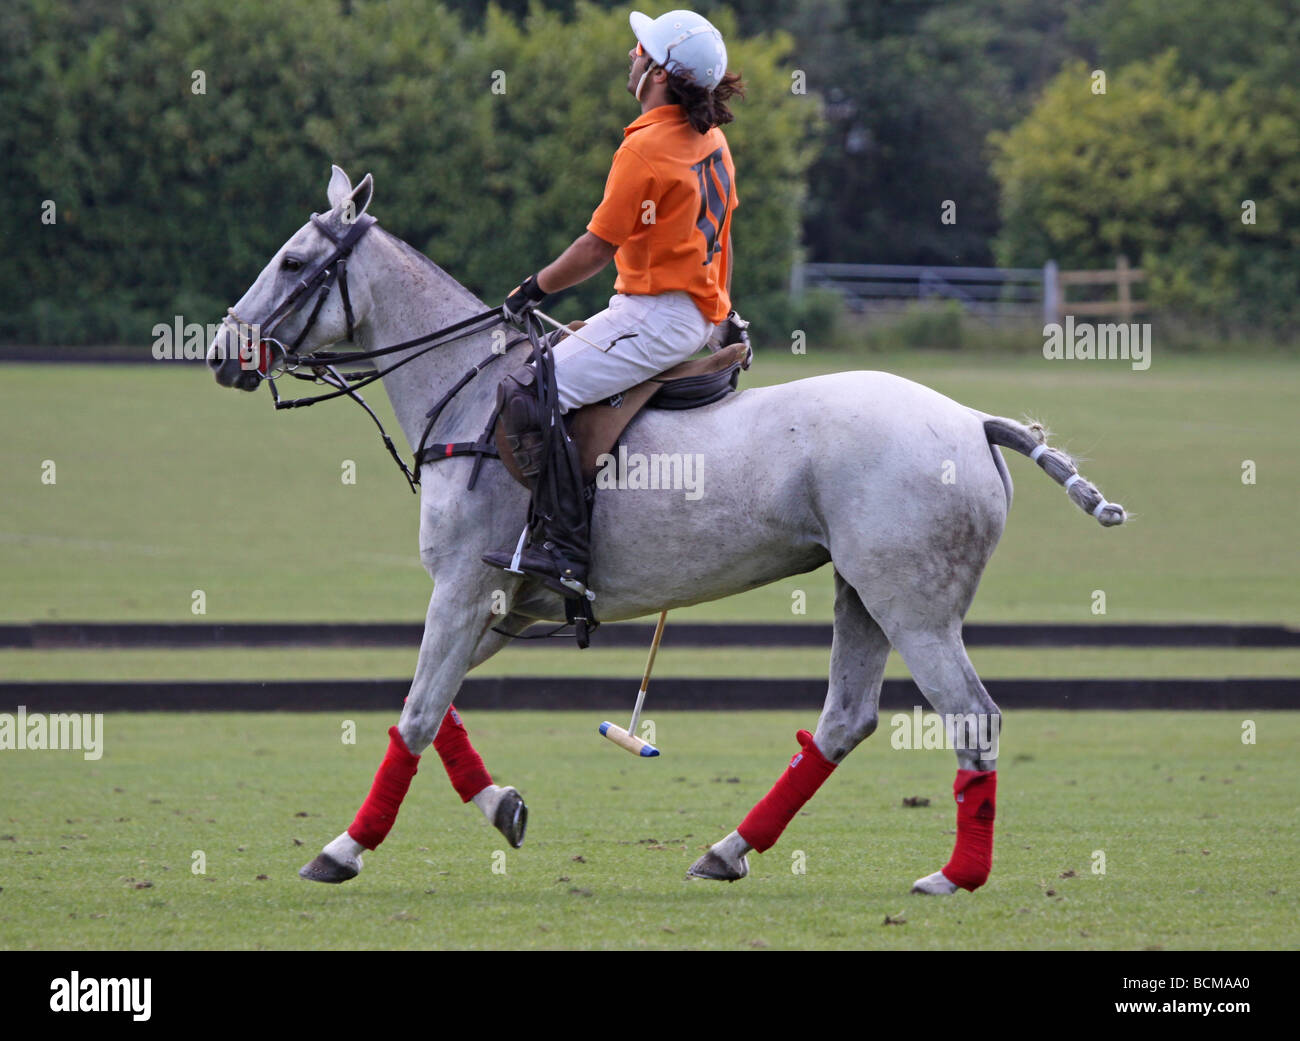 Polo player sur un poney de polo gris Photo Stock - Alamy